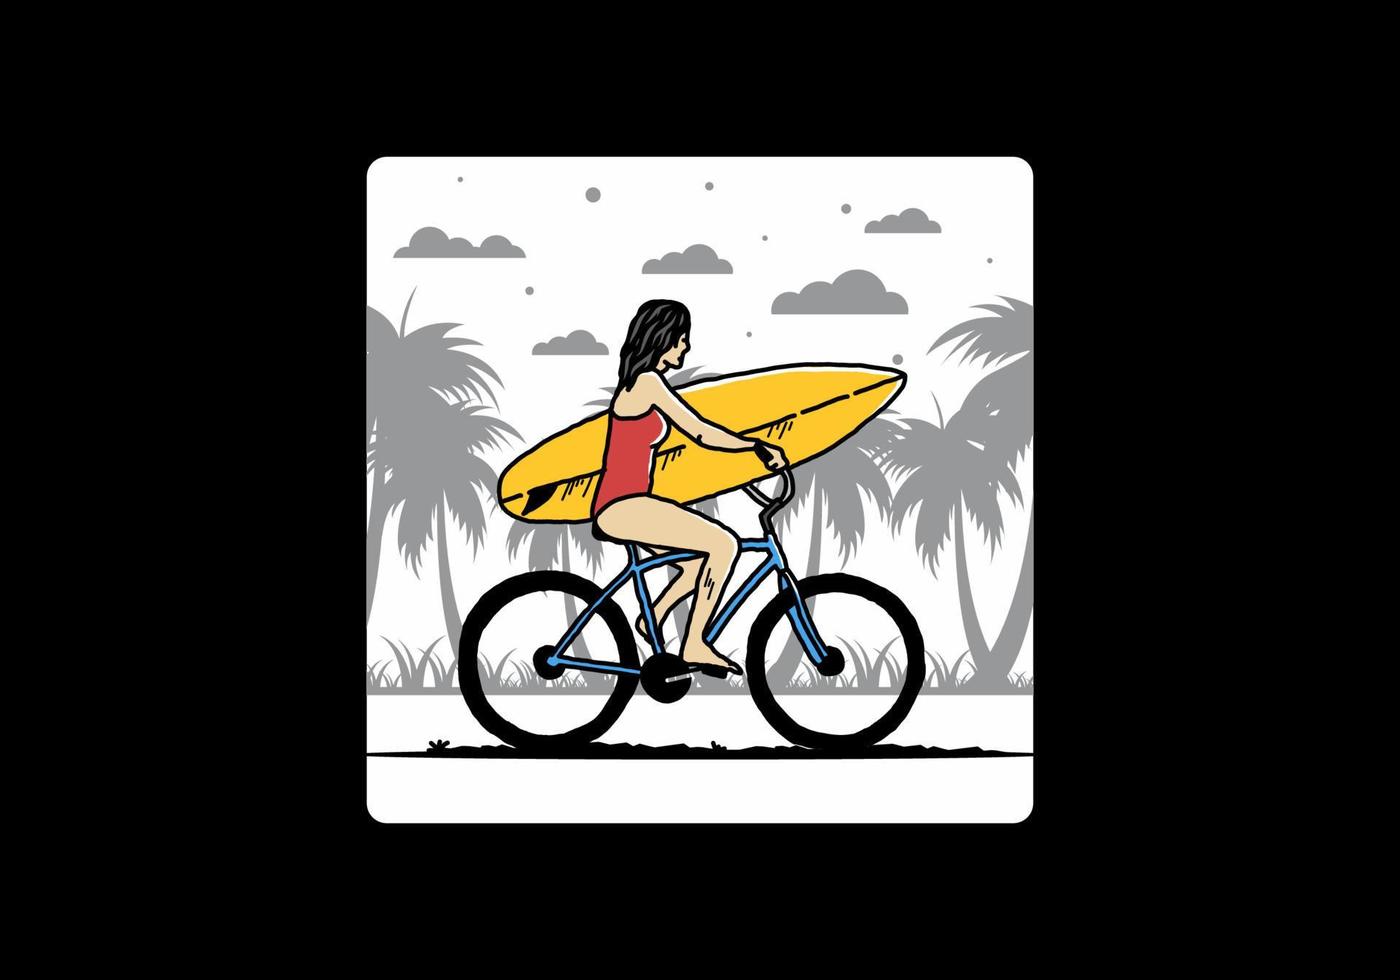 Illustration einer Frau, die auf einem Fahrrad surft vektor